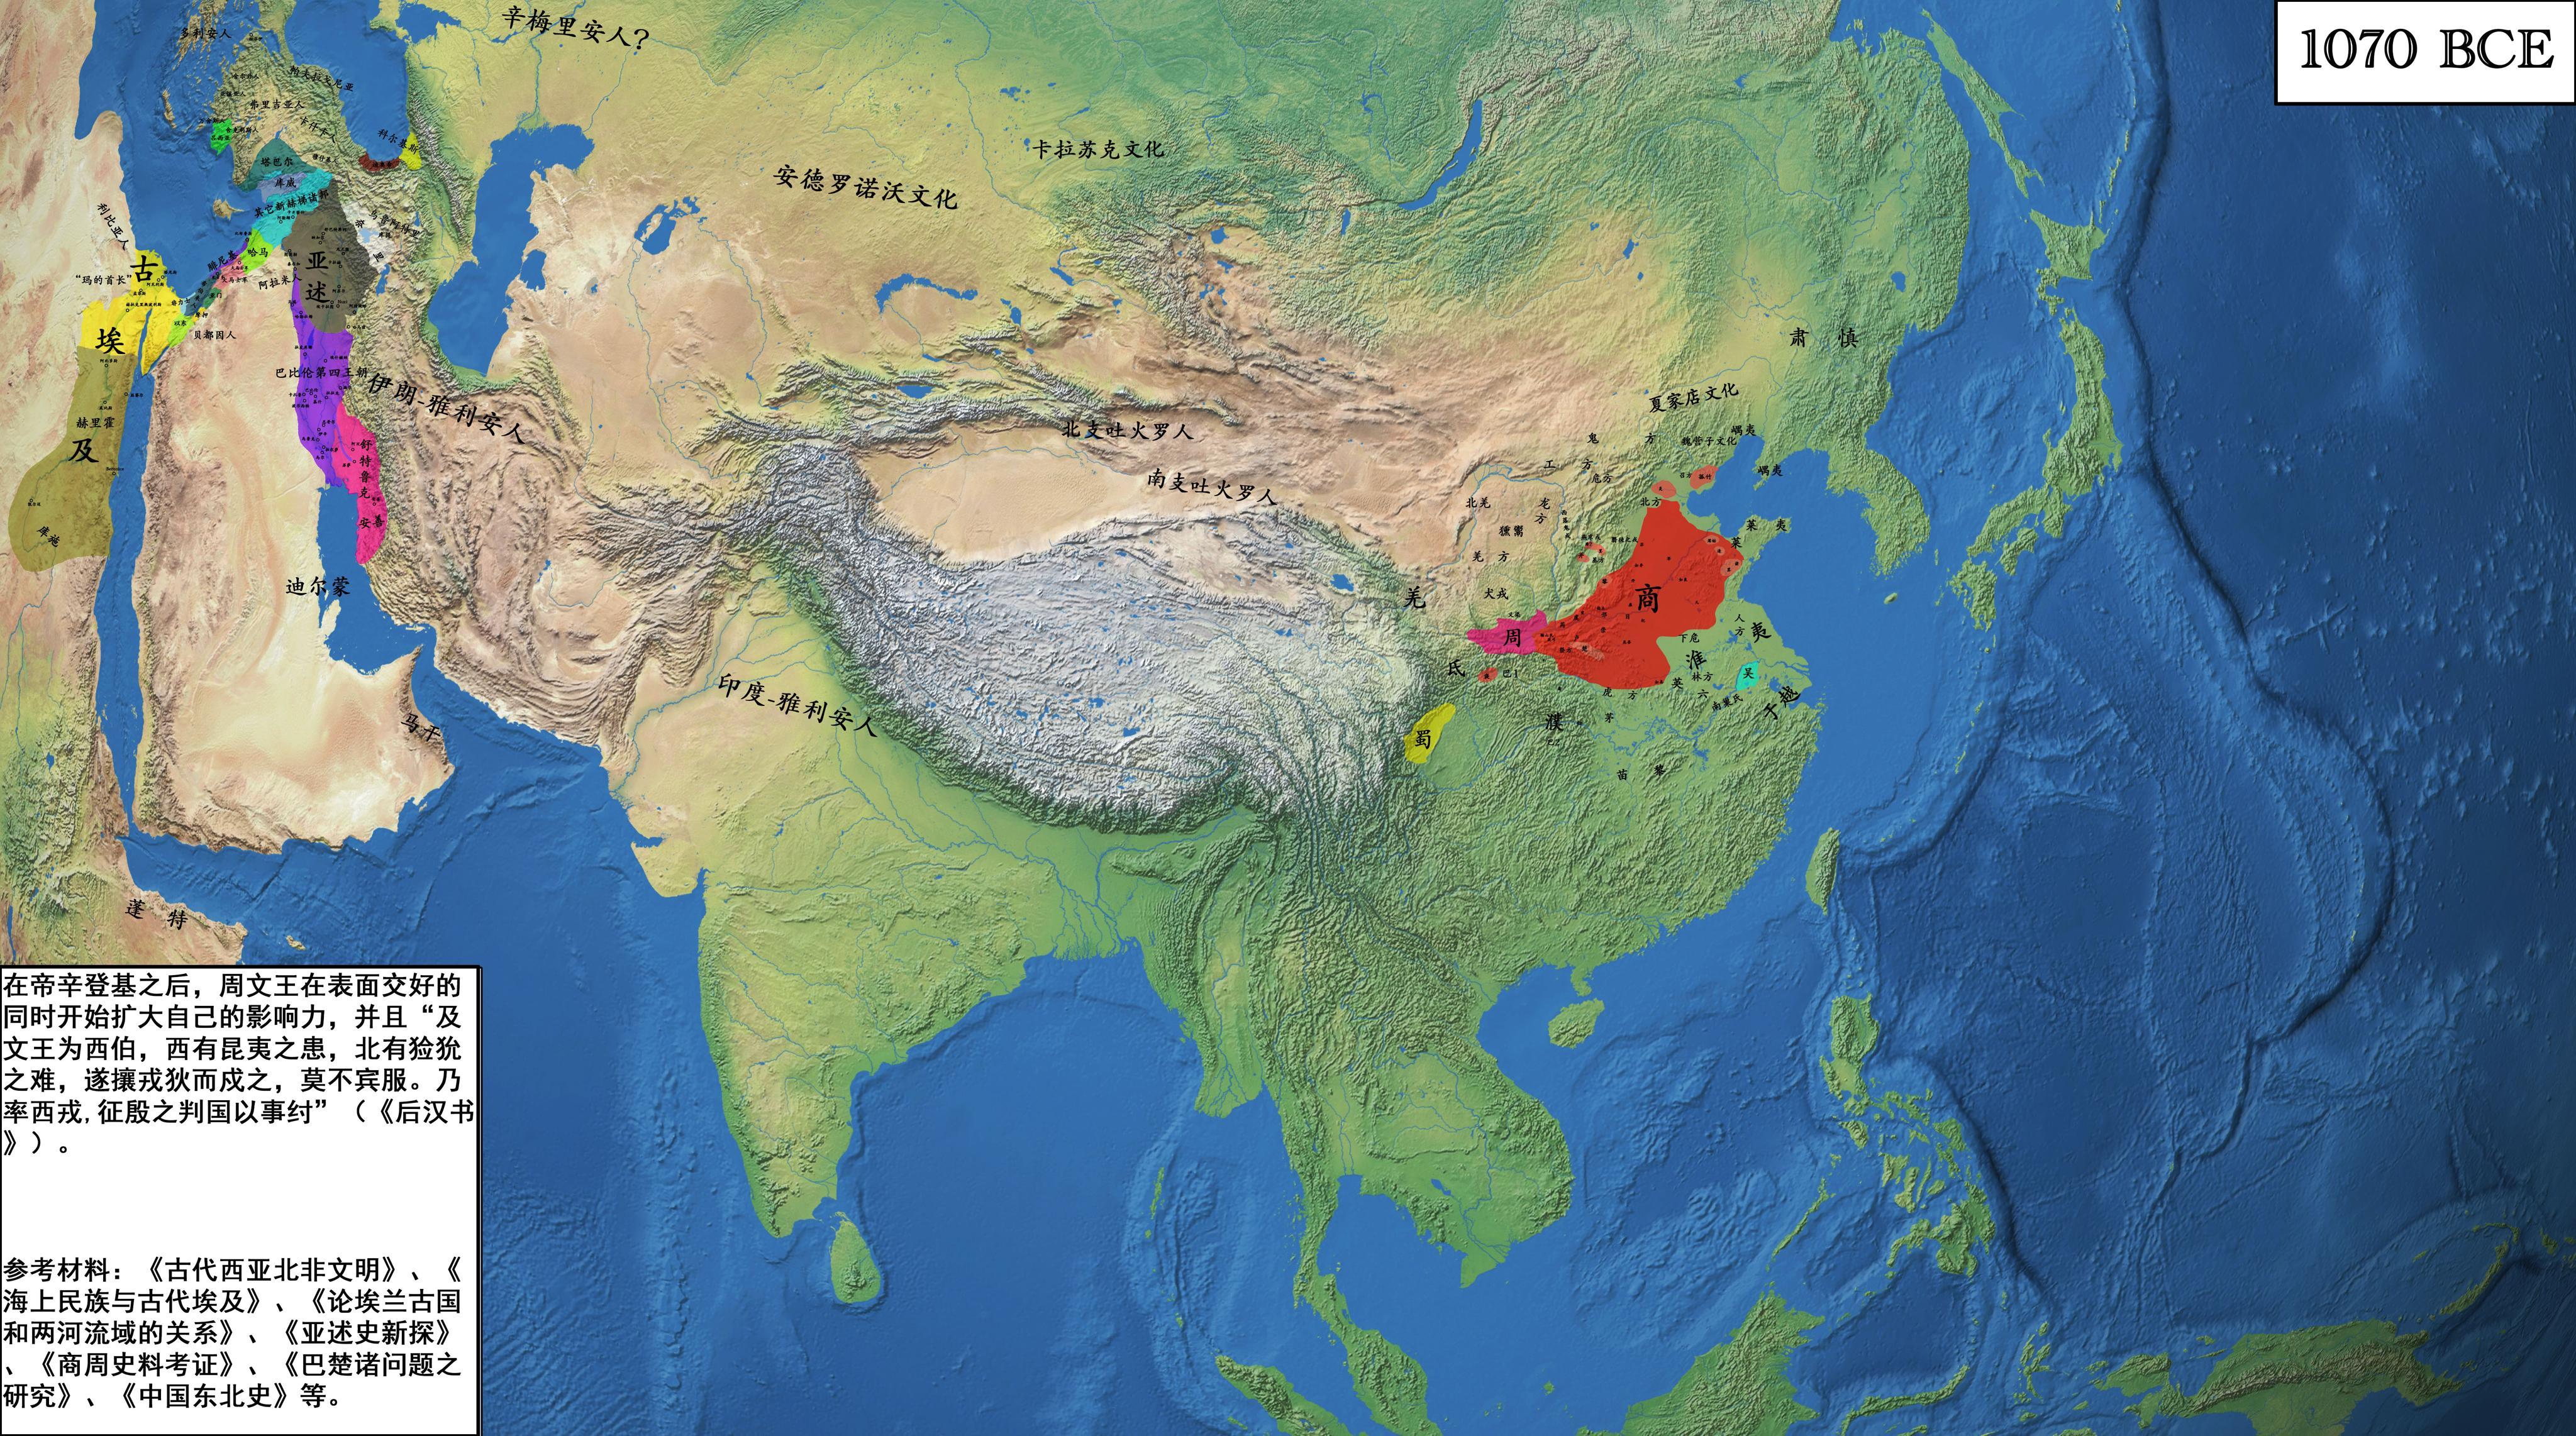 亚洲地图高清全图 - 世界地理地图 - 地理教师网